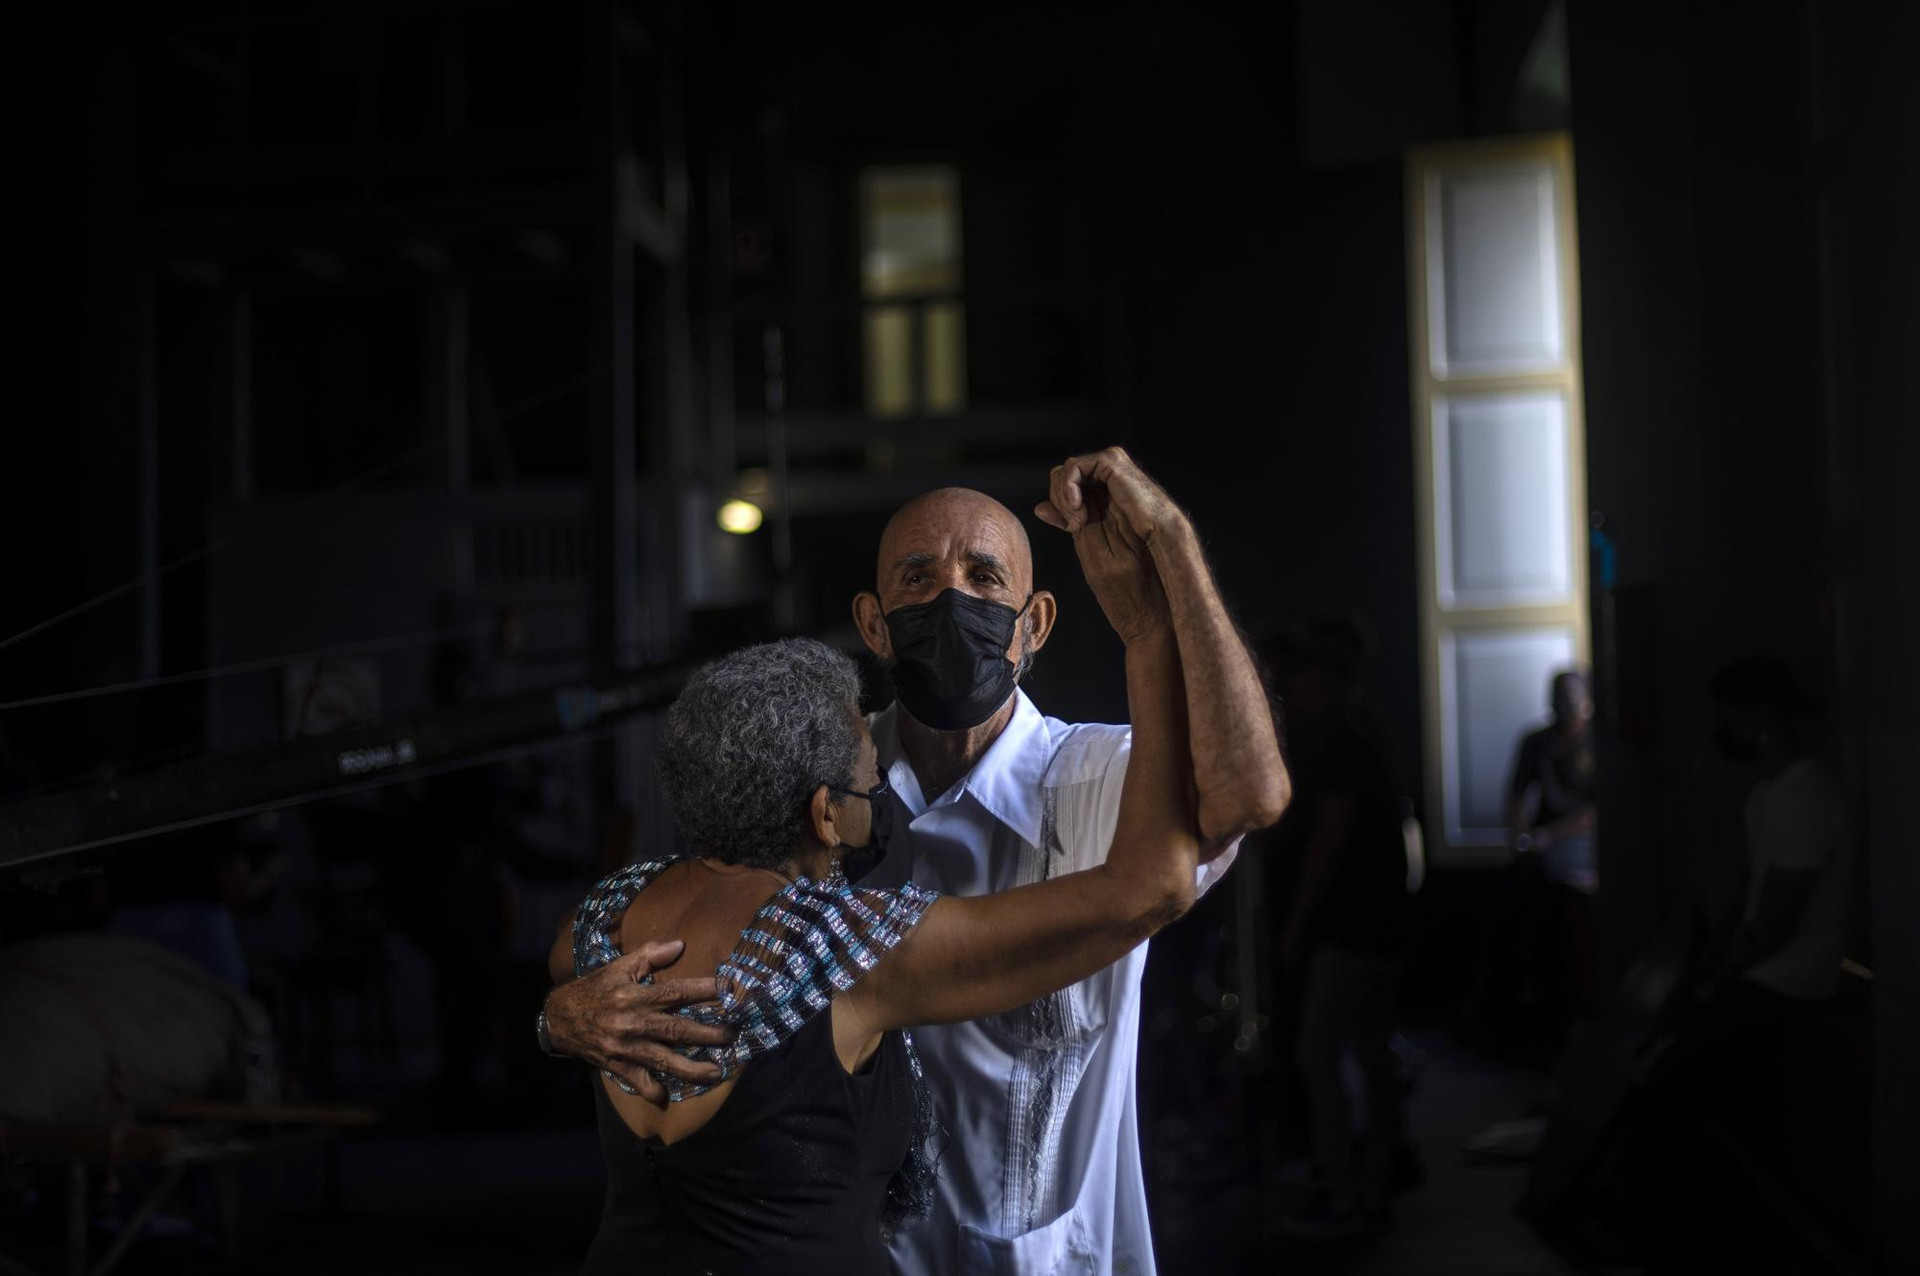 Ông Joaquin Bruzon cùng vợ Milagros Cousett khiêu vũ trong buổi diễn tập cho bản nhạc Danzon với dàn nhạc Failde ở thành phố Matanzas, Cuba. Ảnh: AP